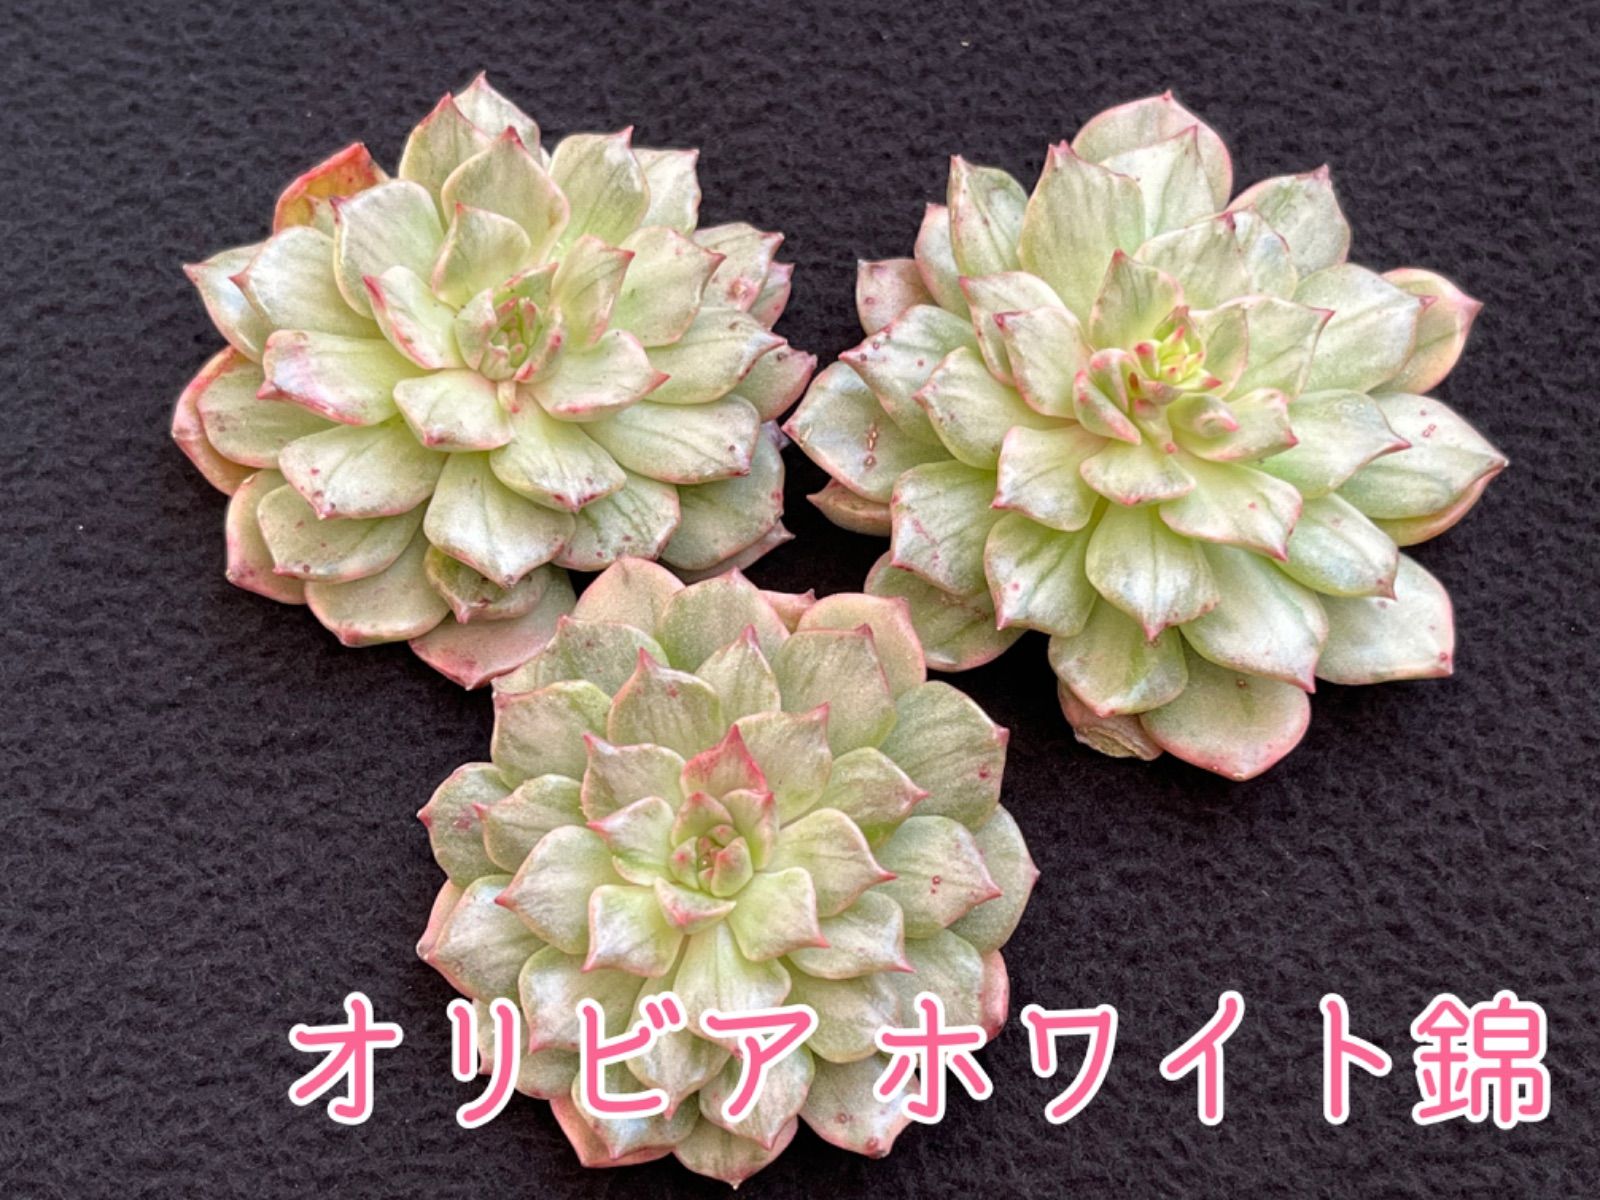 ☆多肉植物 オリビア ホワイト錦 エケベリア 韓国苗☆ - メルカリ